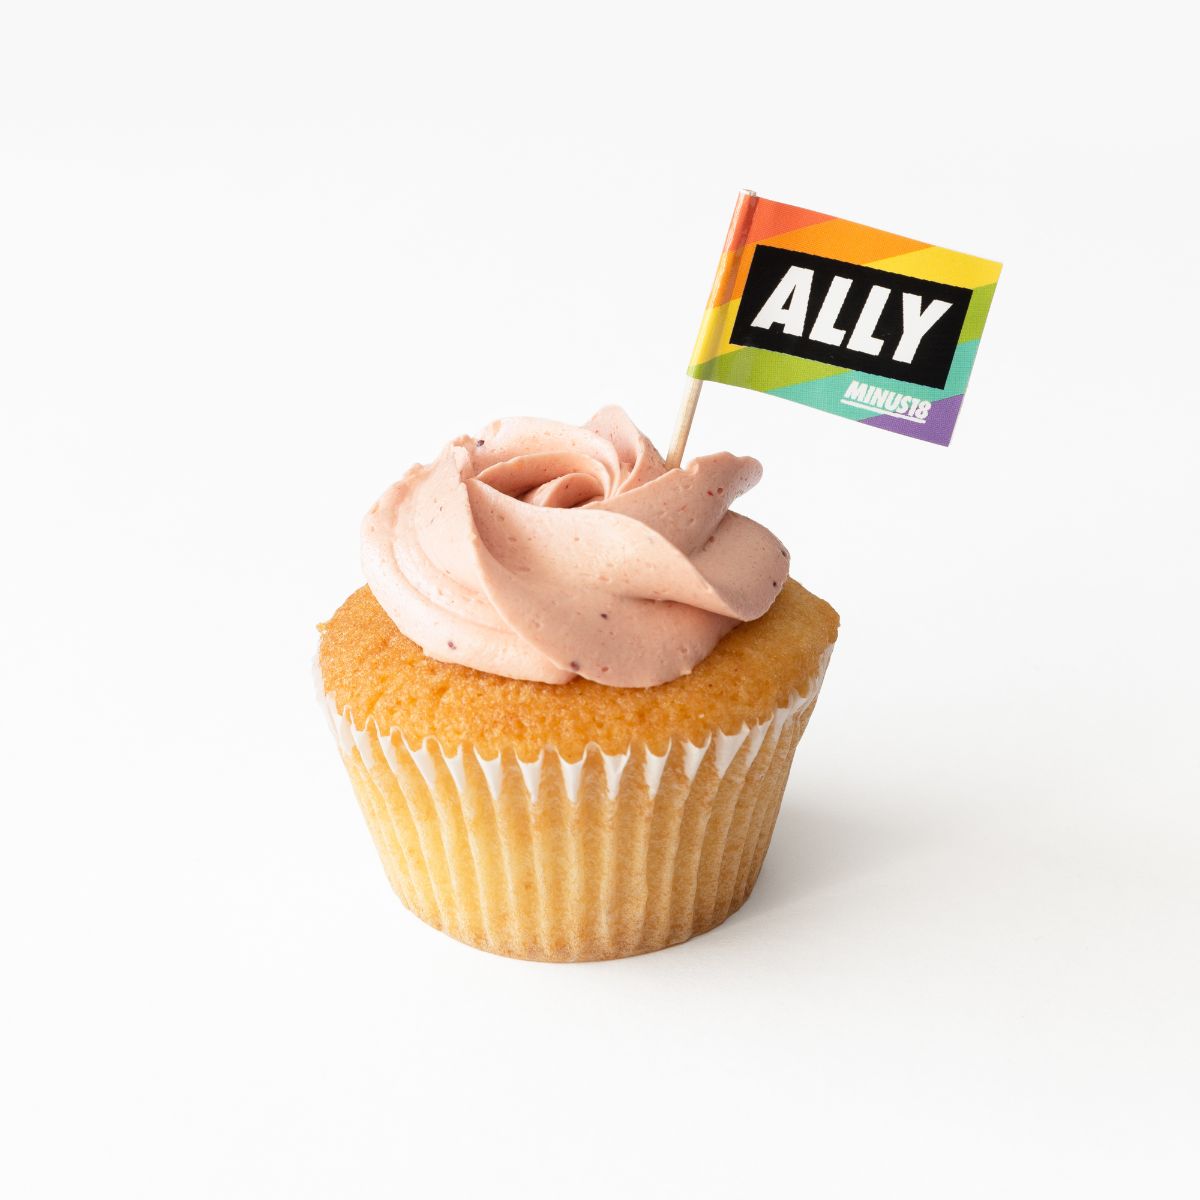 Rainbow Ally cupcake flags